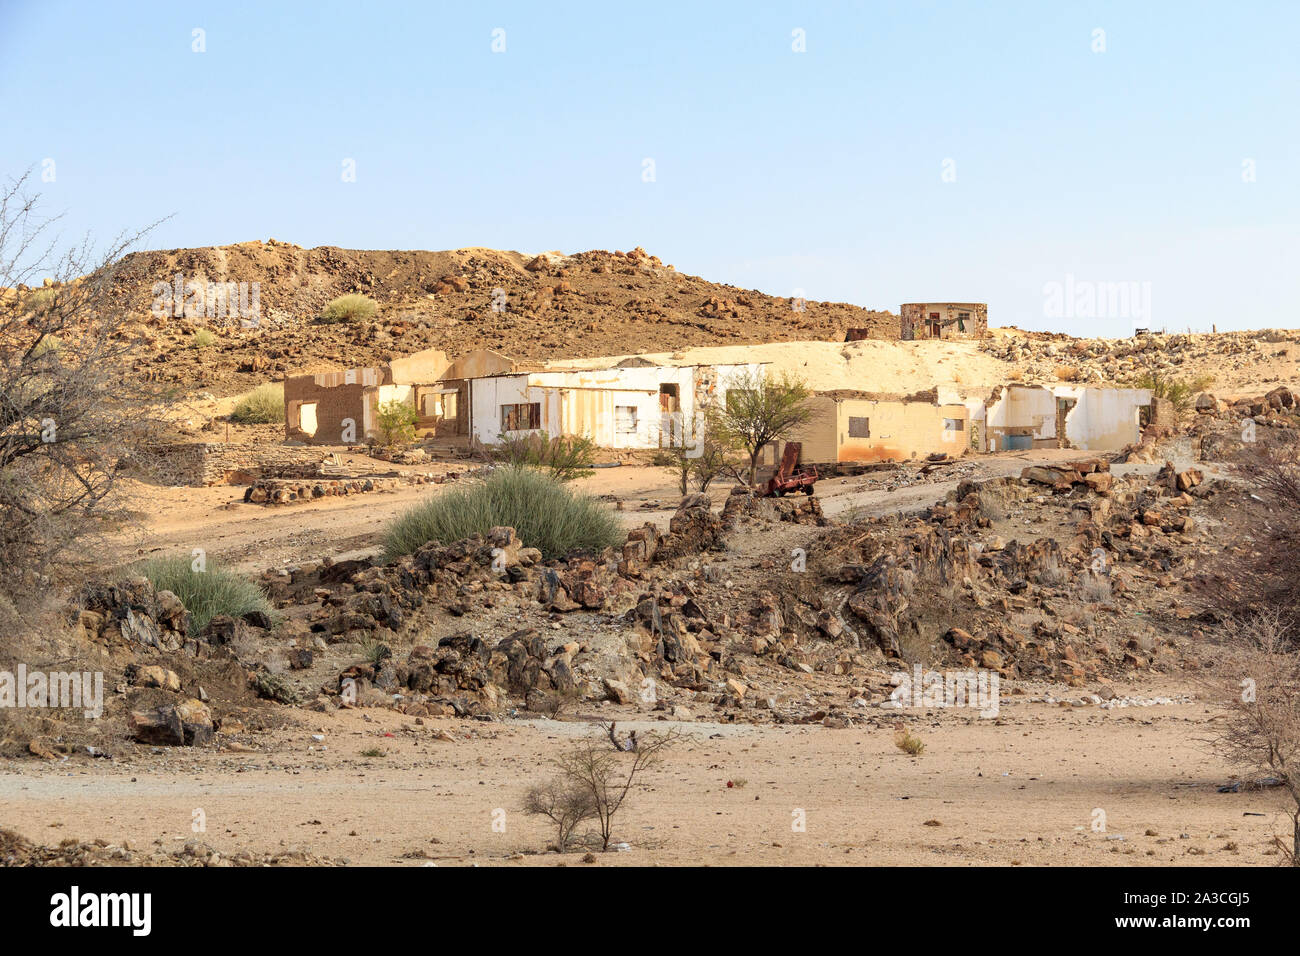 Ruines d'une colonie abandonnée dans un paysage stérile, Damaraland, Namibie, Afrique Banque D'Images